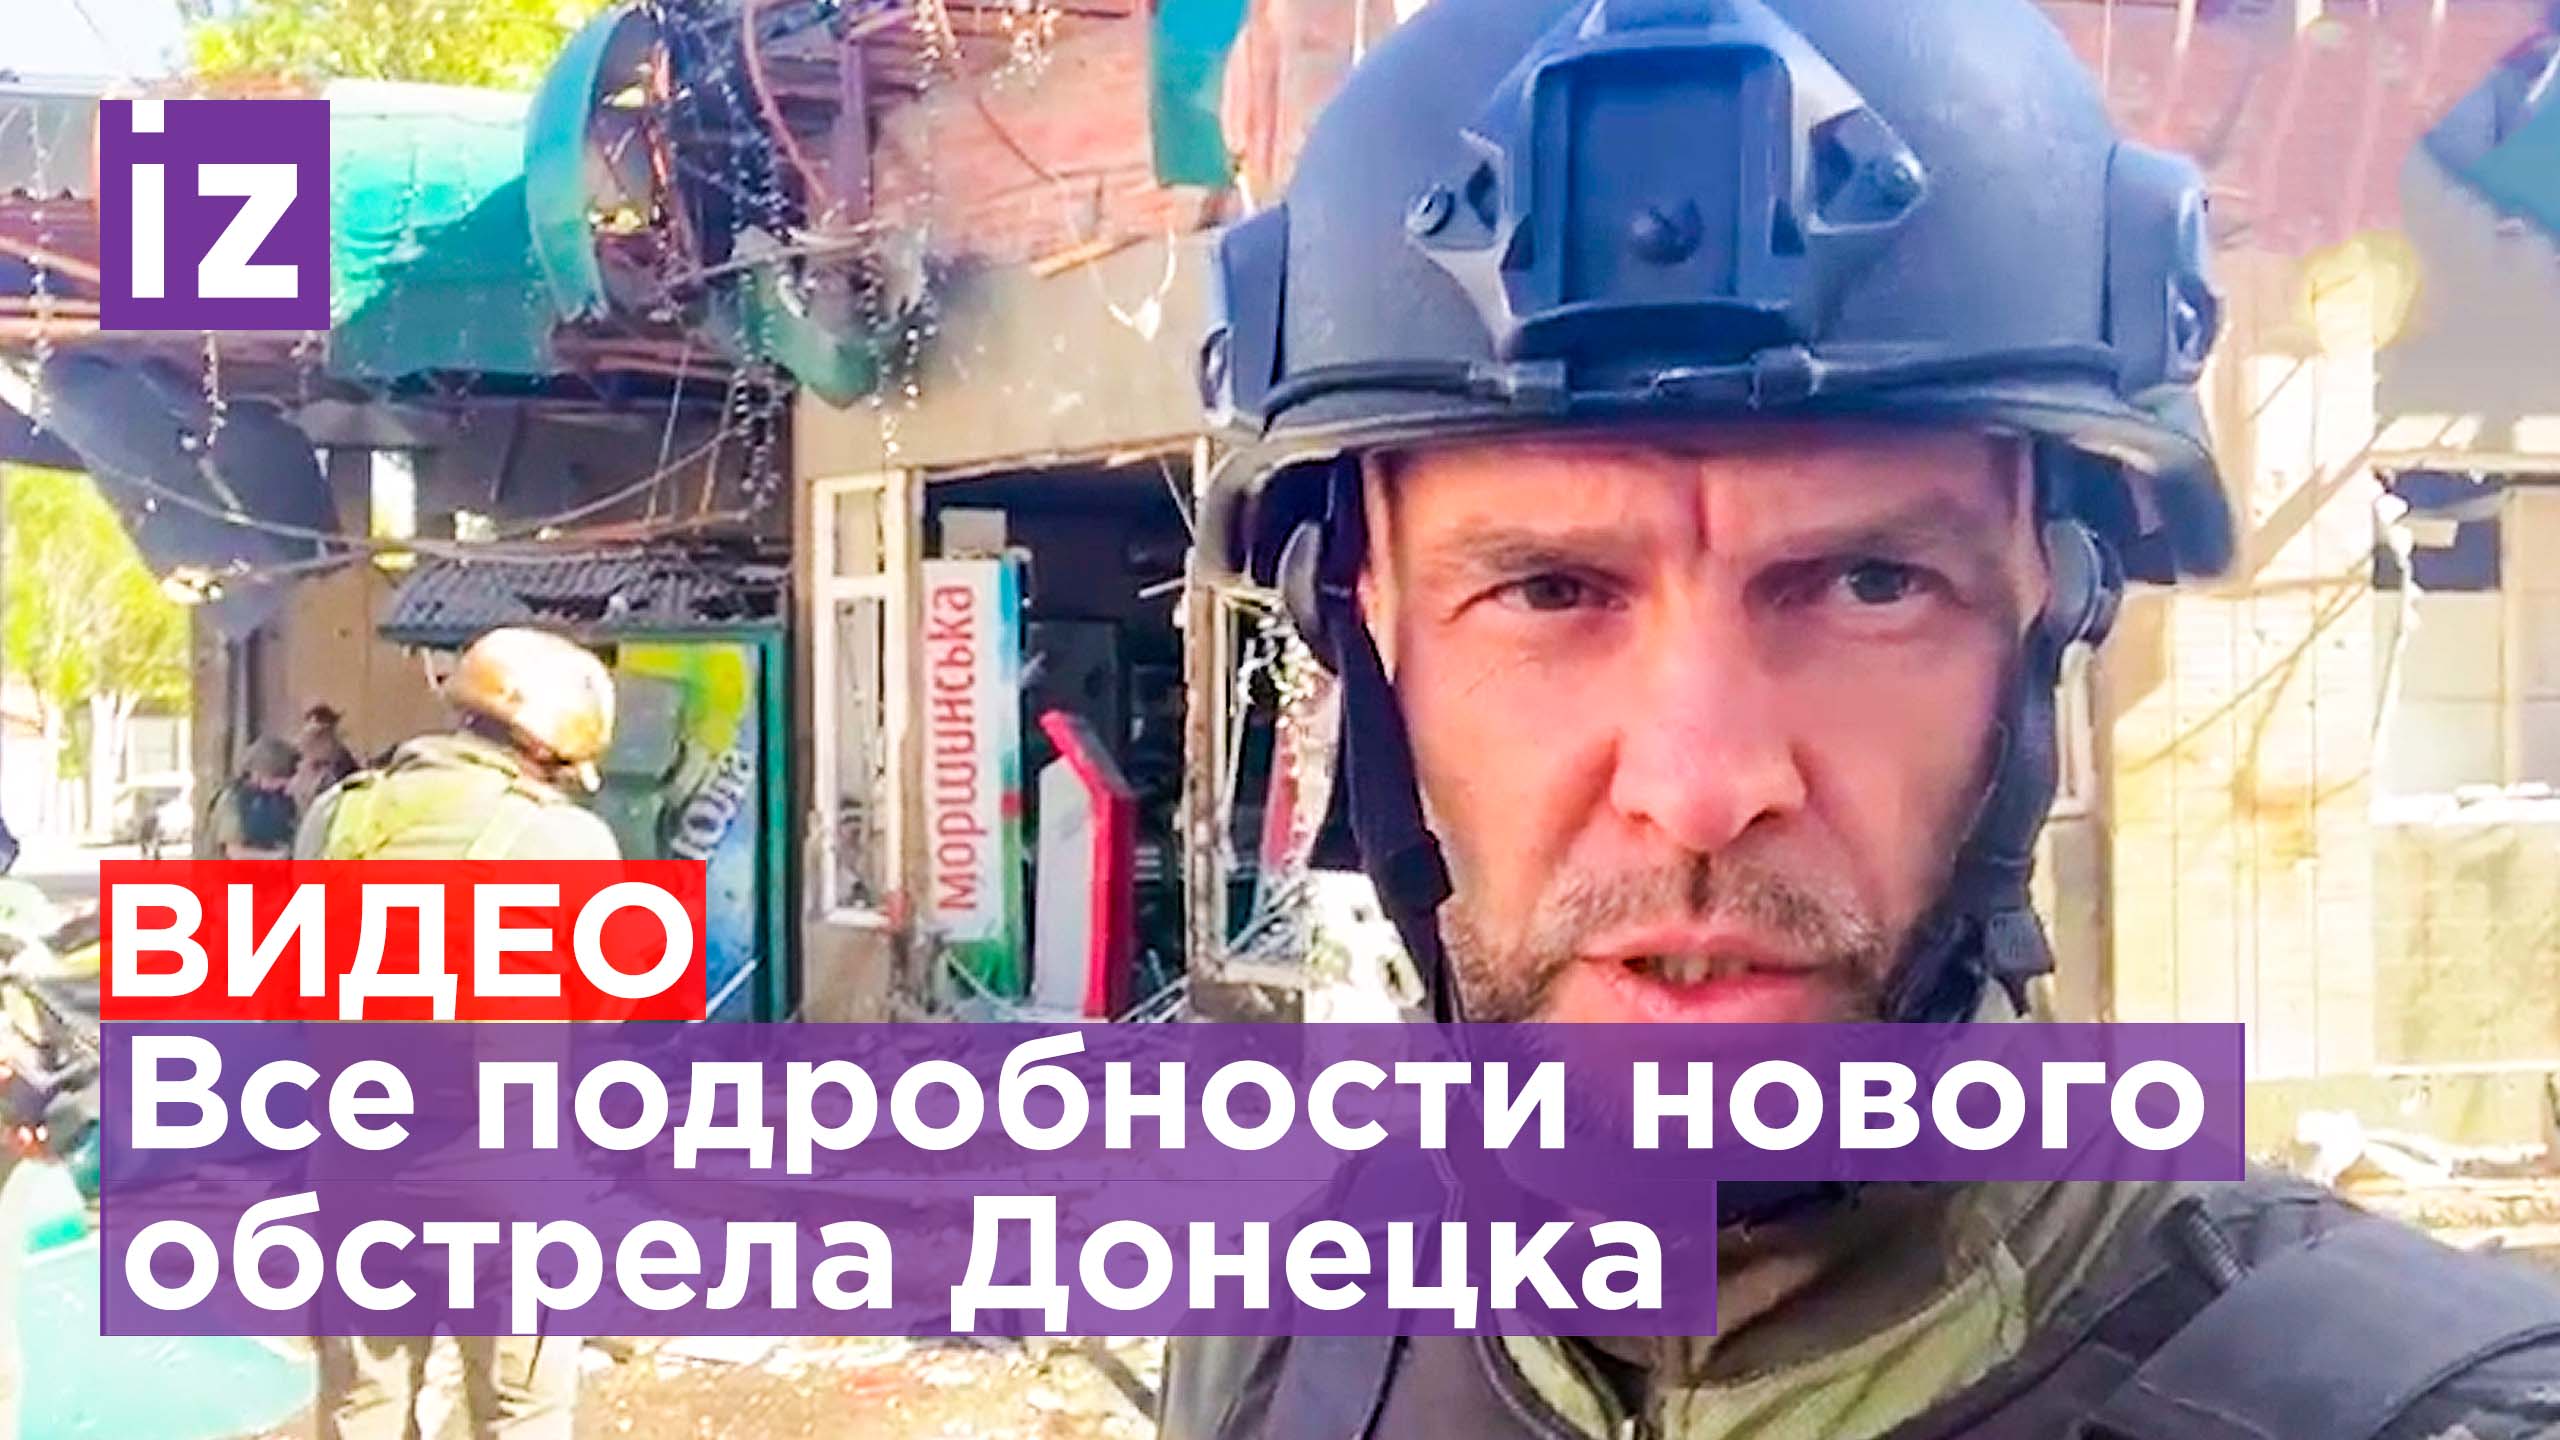 "Специально целились, где больше людей - в магазин!" Наш военкор о последствиях удара по Донецку